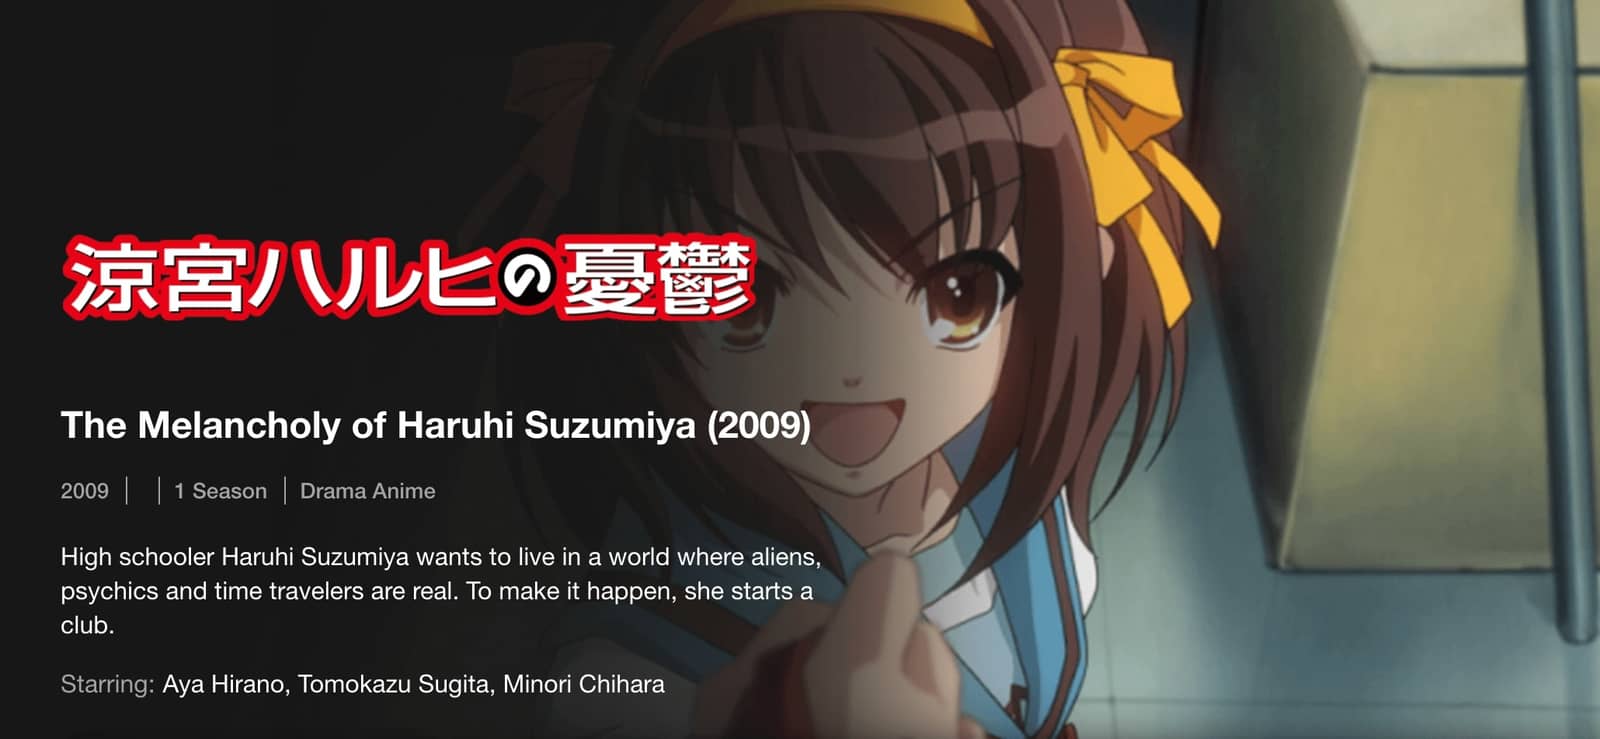 والكآبة Haruhi Suzumiya من-أفضل 20 مسلسلات أنمي على نيتفليكس